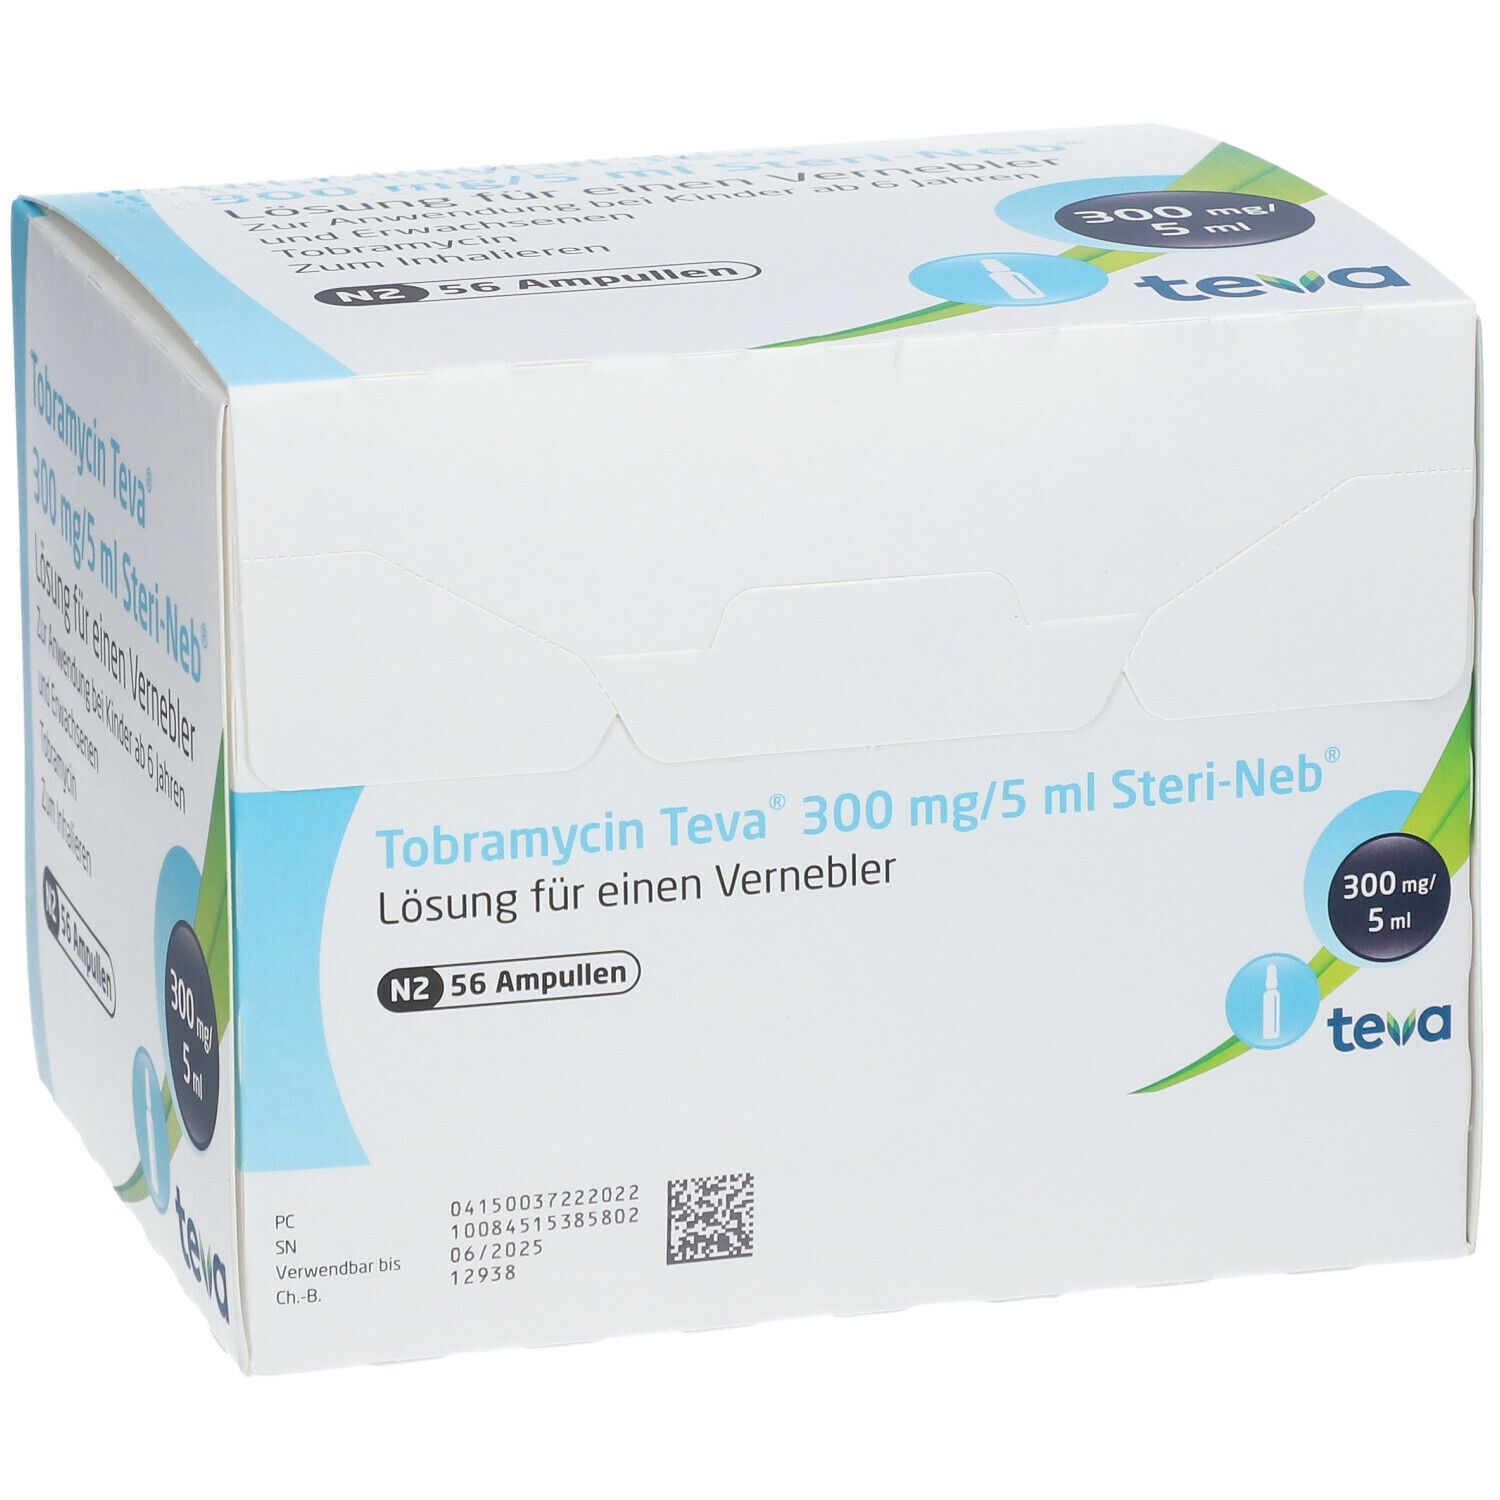 Tobramycin Teva® 300 mg/5 ml Steri-Neb®